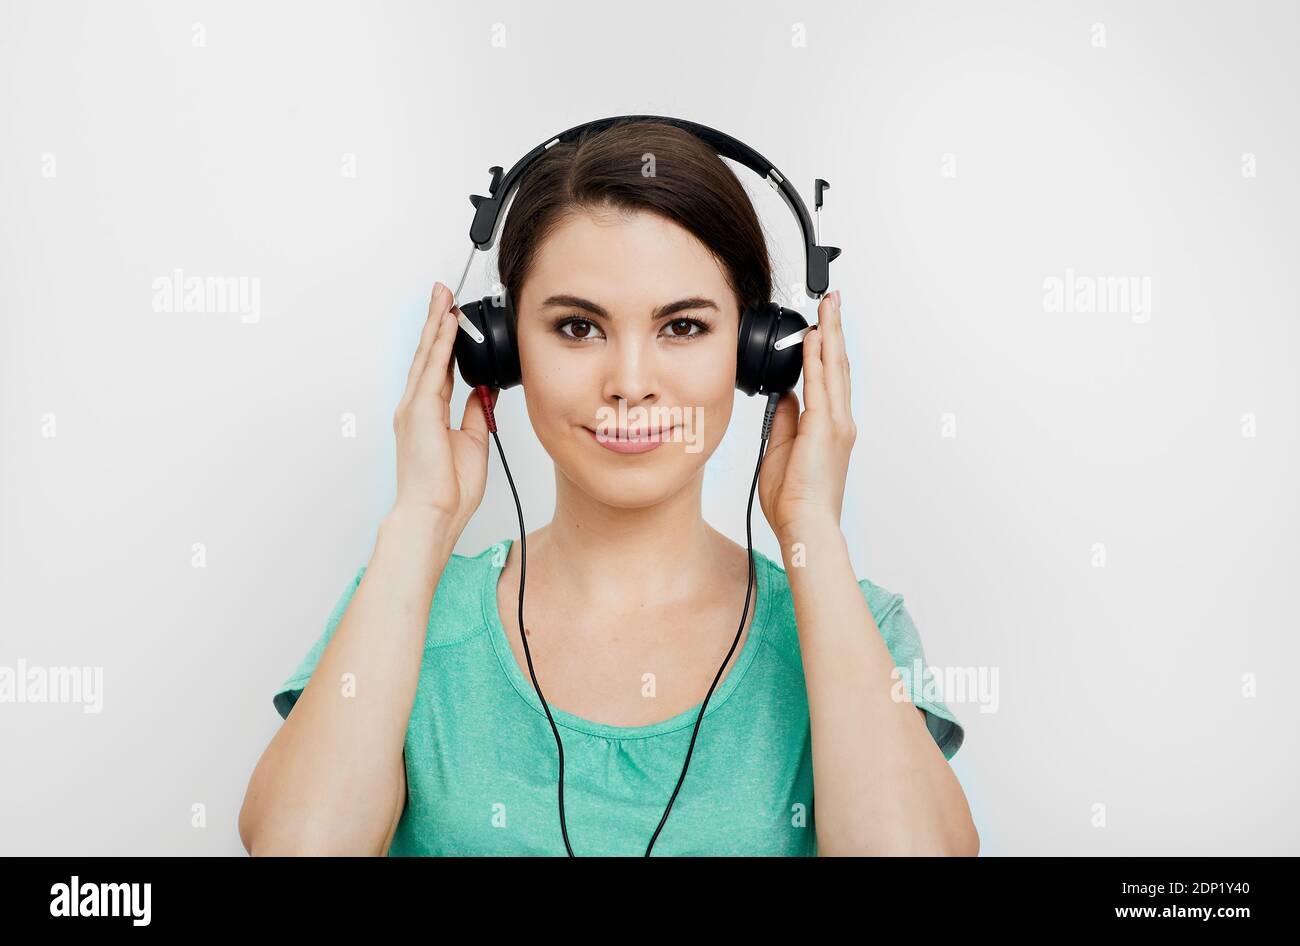 Audiométrie, examen auditif. Femme de race mixte portant des écouteurs spéciaux pour obtenir un diagnostic auditif. Vérifiez votre audition Banque D'Images